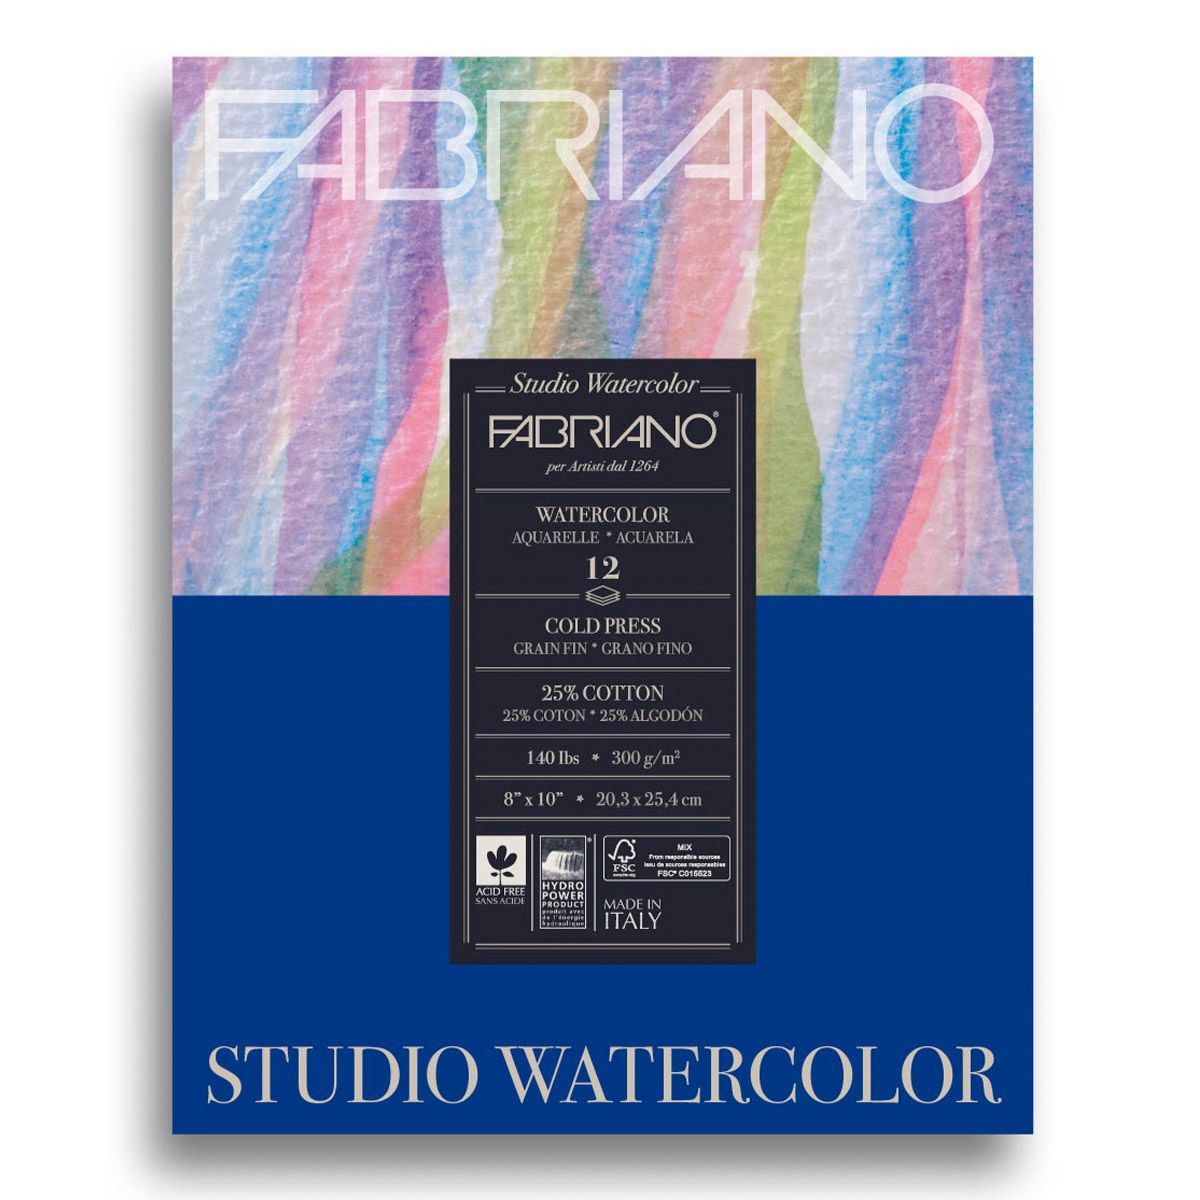 Fabriano Studio Watercolour 12 Shts./Pad - 140lb Cold Pressed, 8x10 Inch